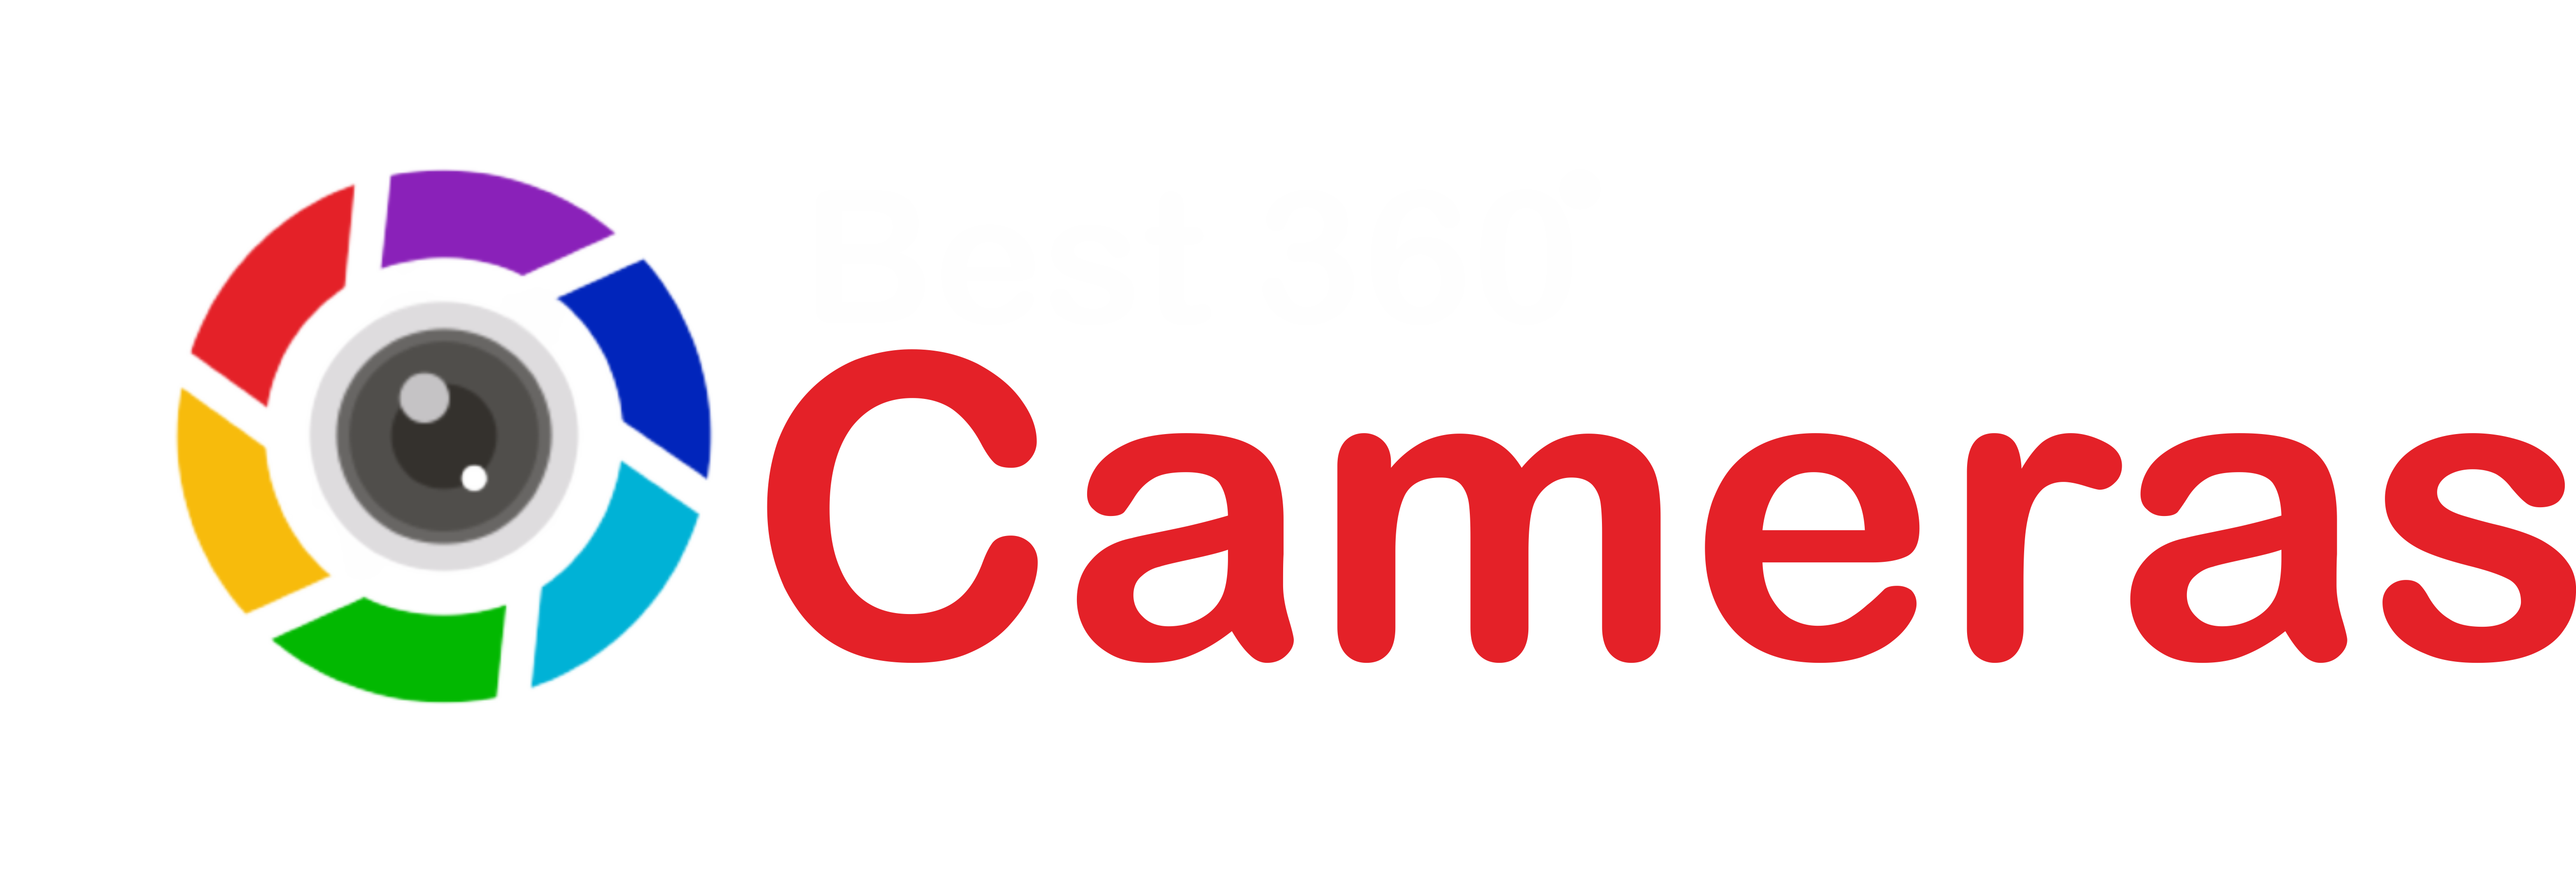 Best 360° Cameras